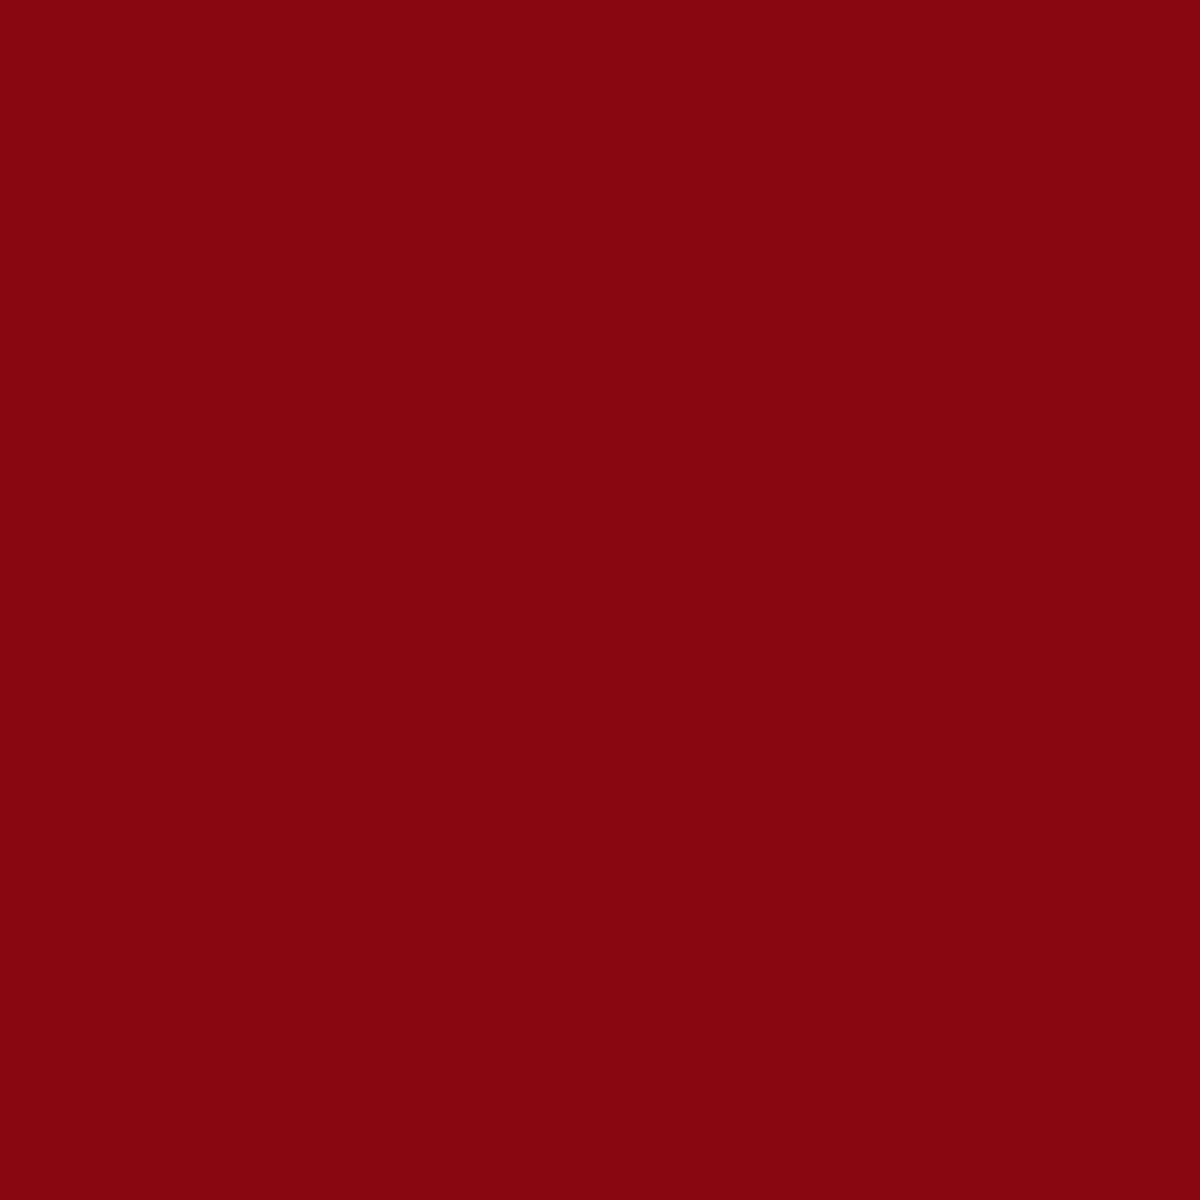 3M Scotchcal Pellicola colorata traslucida 3630-53 Rosso pomodoro 1,22 m x 45,7 m